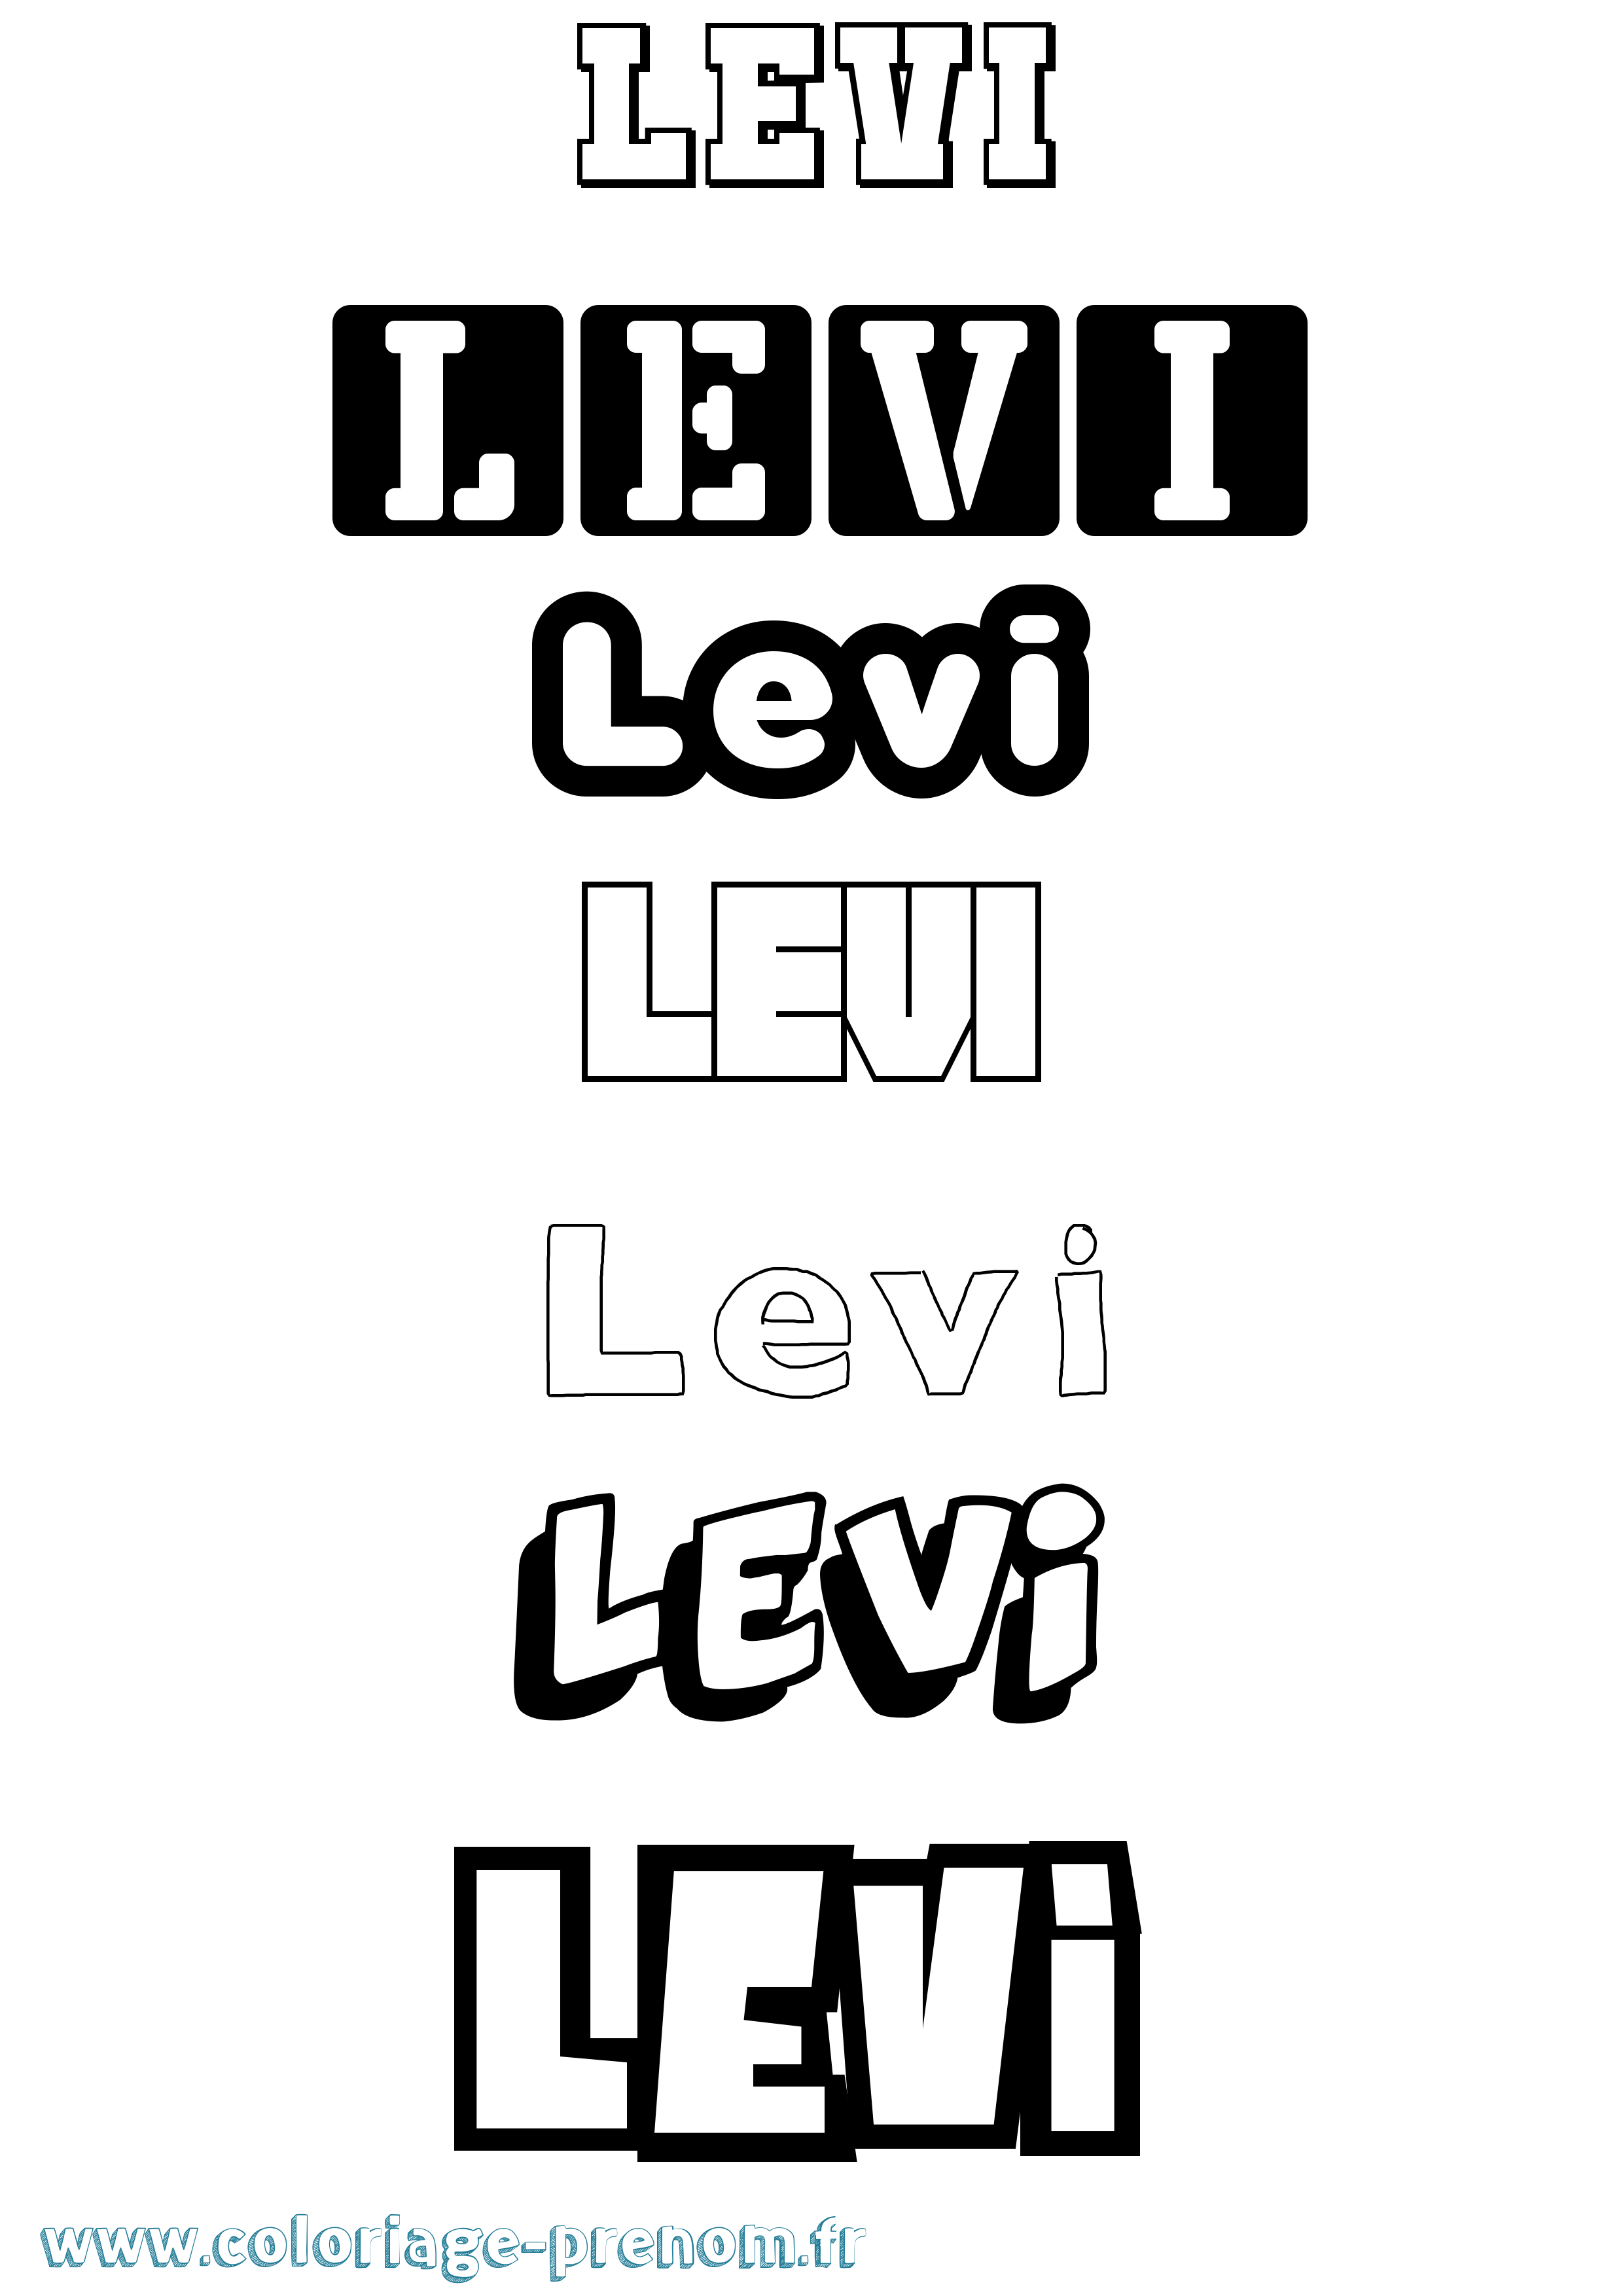 Coloriage prénom Levi